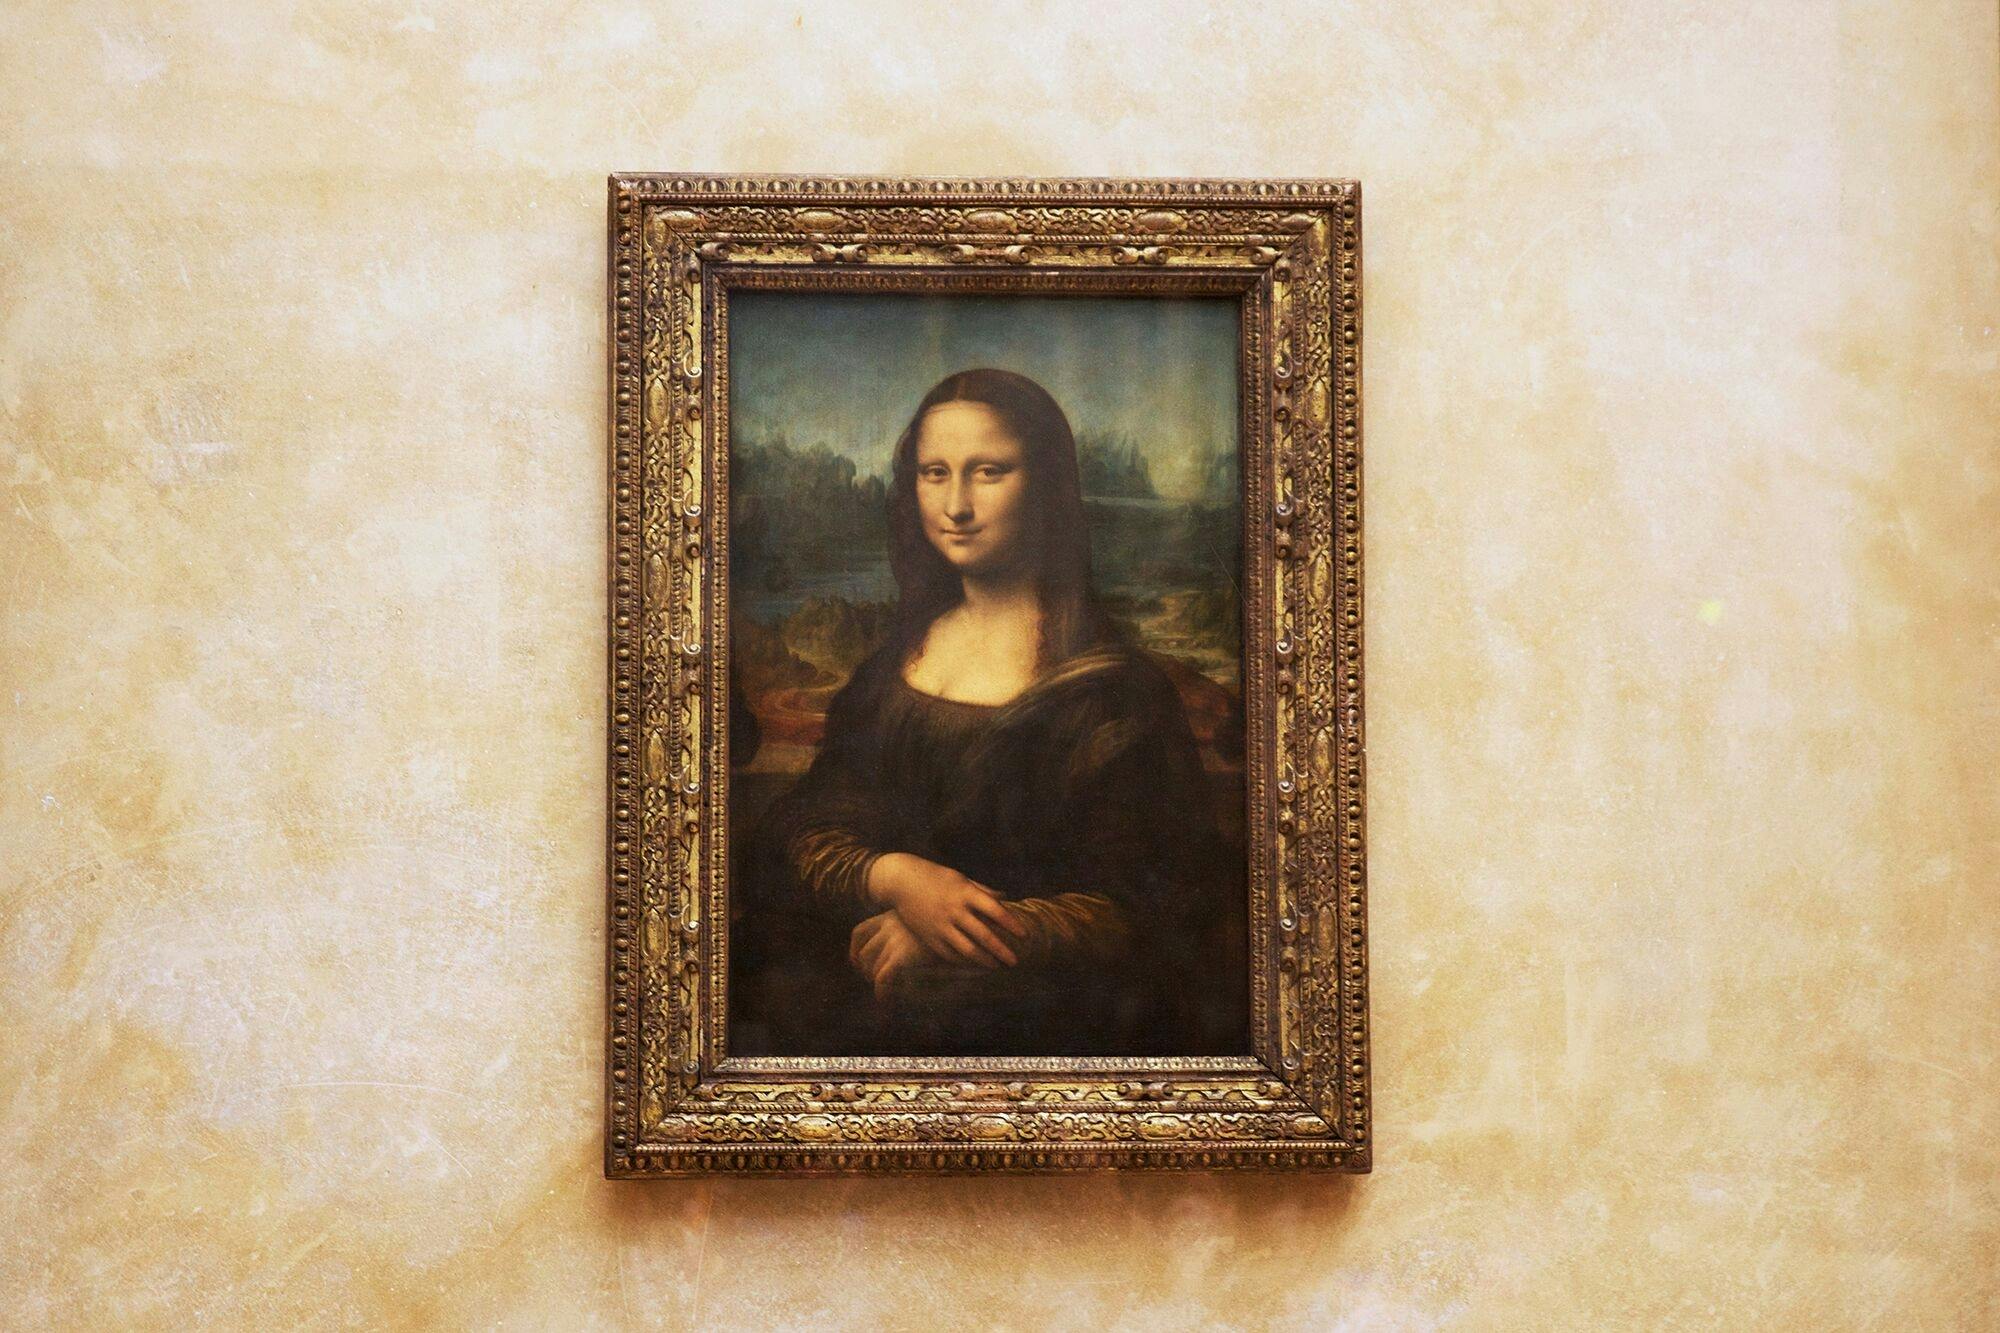 Visita al Louvre a última hora con encuentro a solas con la «Mona Lisa»